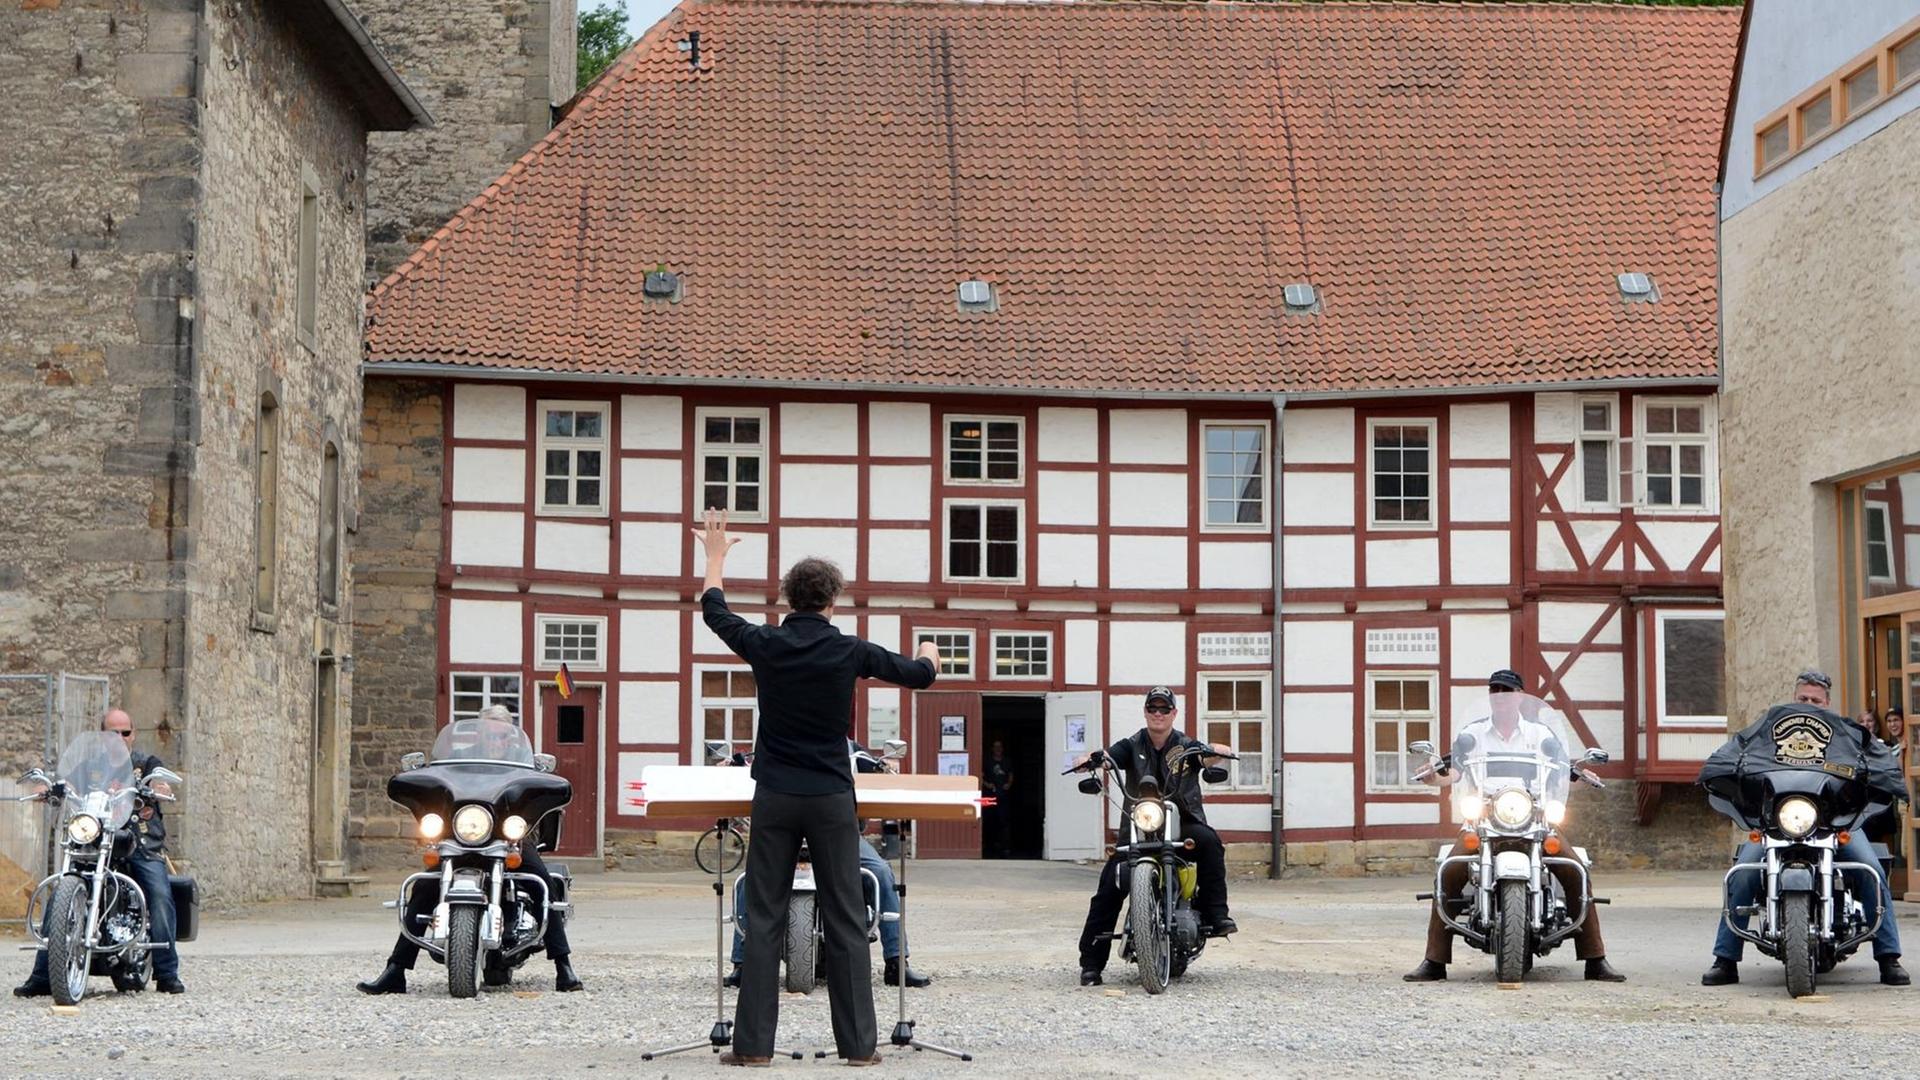 Motorradfahrer stehen mit ihren Harley Davidson Bikes vor dem Dirigenten Matthias Rebstock auf dem Kulturcampus Domäne Marienburg in Hildesheim. Der Dirigent steht mit dem Rücken zur Kamera im Zentrum des Bildes, die Motorradfahrer blicken in Richtung der Kamera, im Hintergrund ist ein Fachwerkhaus zu sehen.